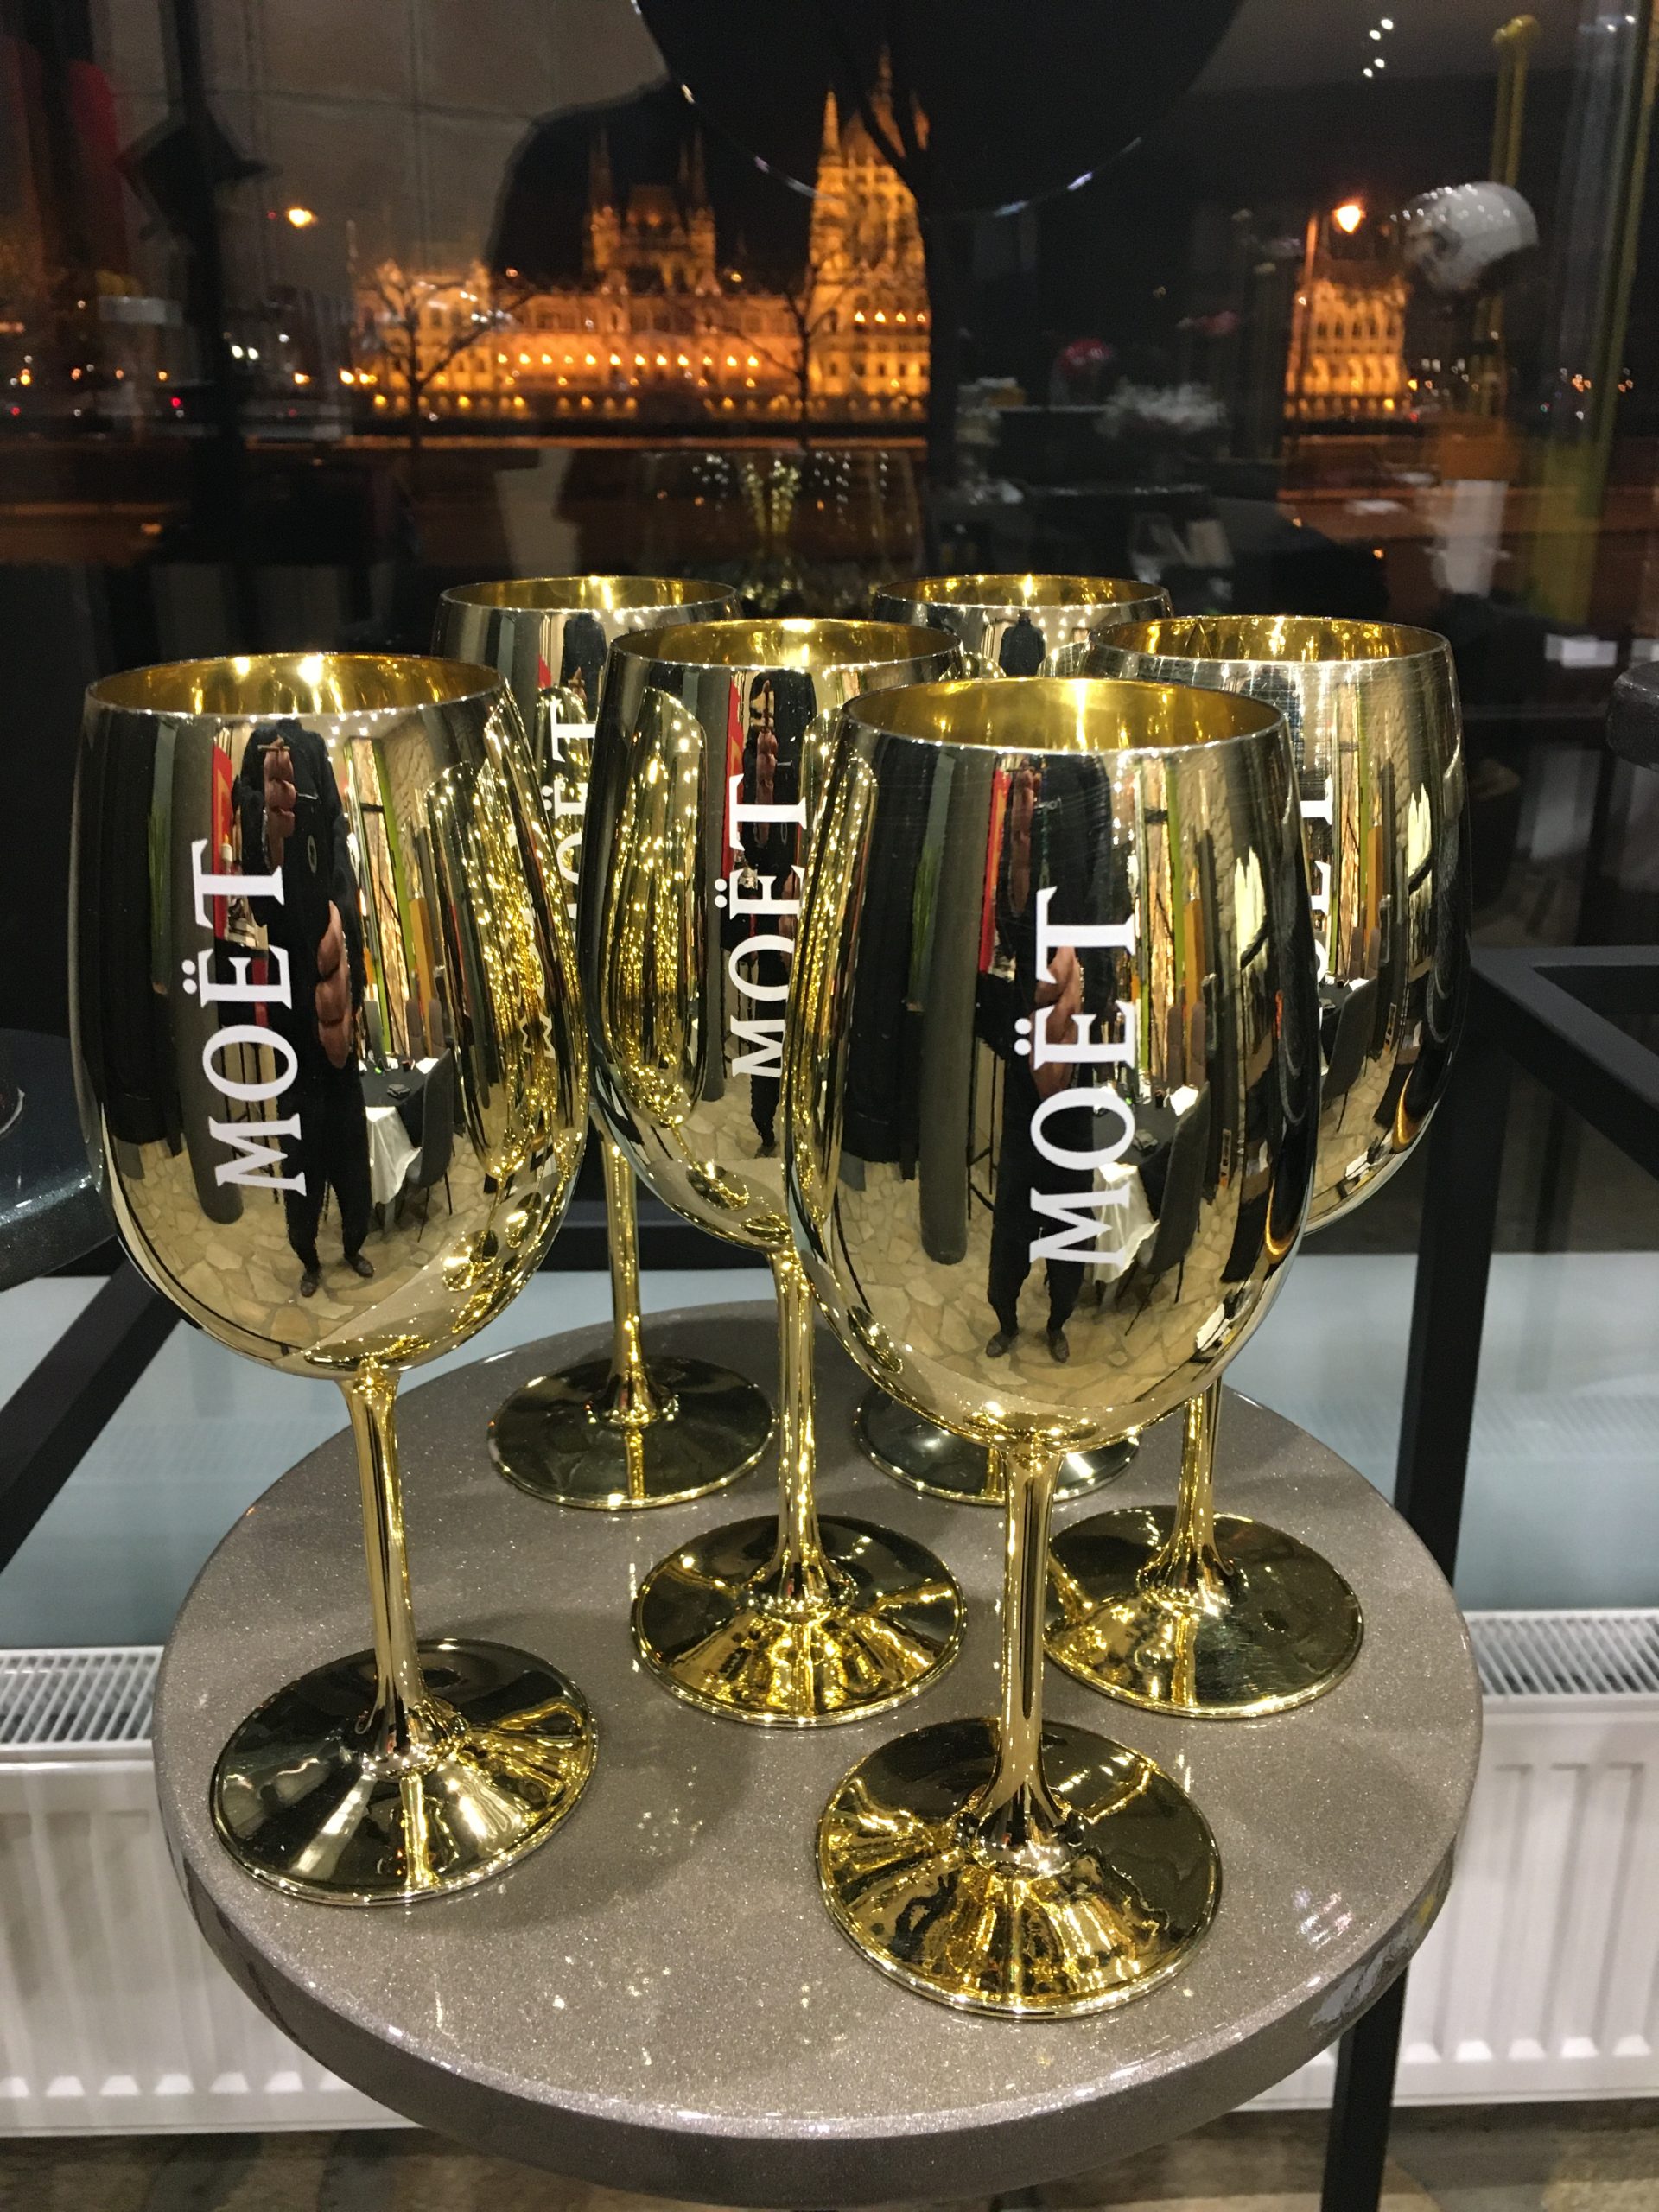 Moët & Chandon Champagne, üvegből készült arany színű pezsgős kelyhek (6db) – 58.600.-Ft